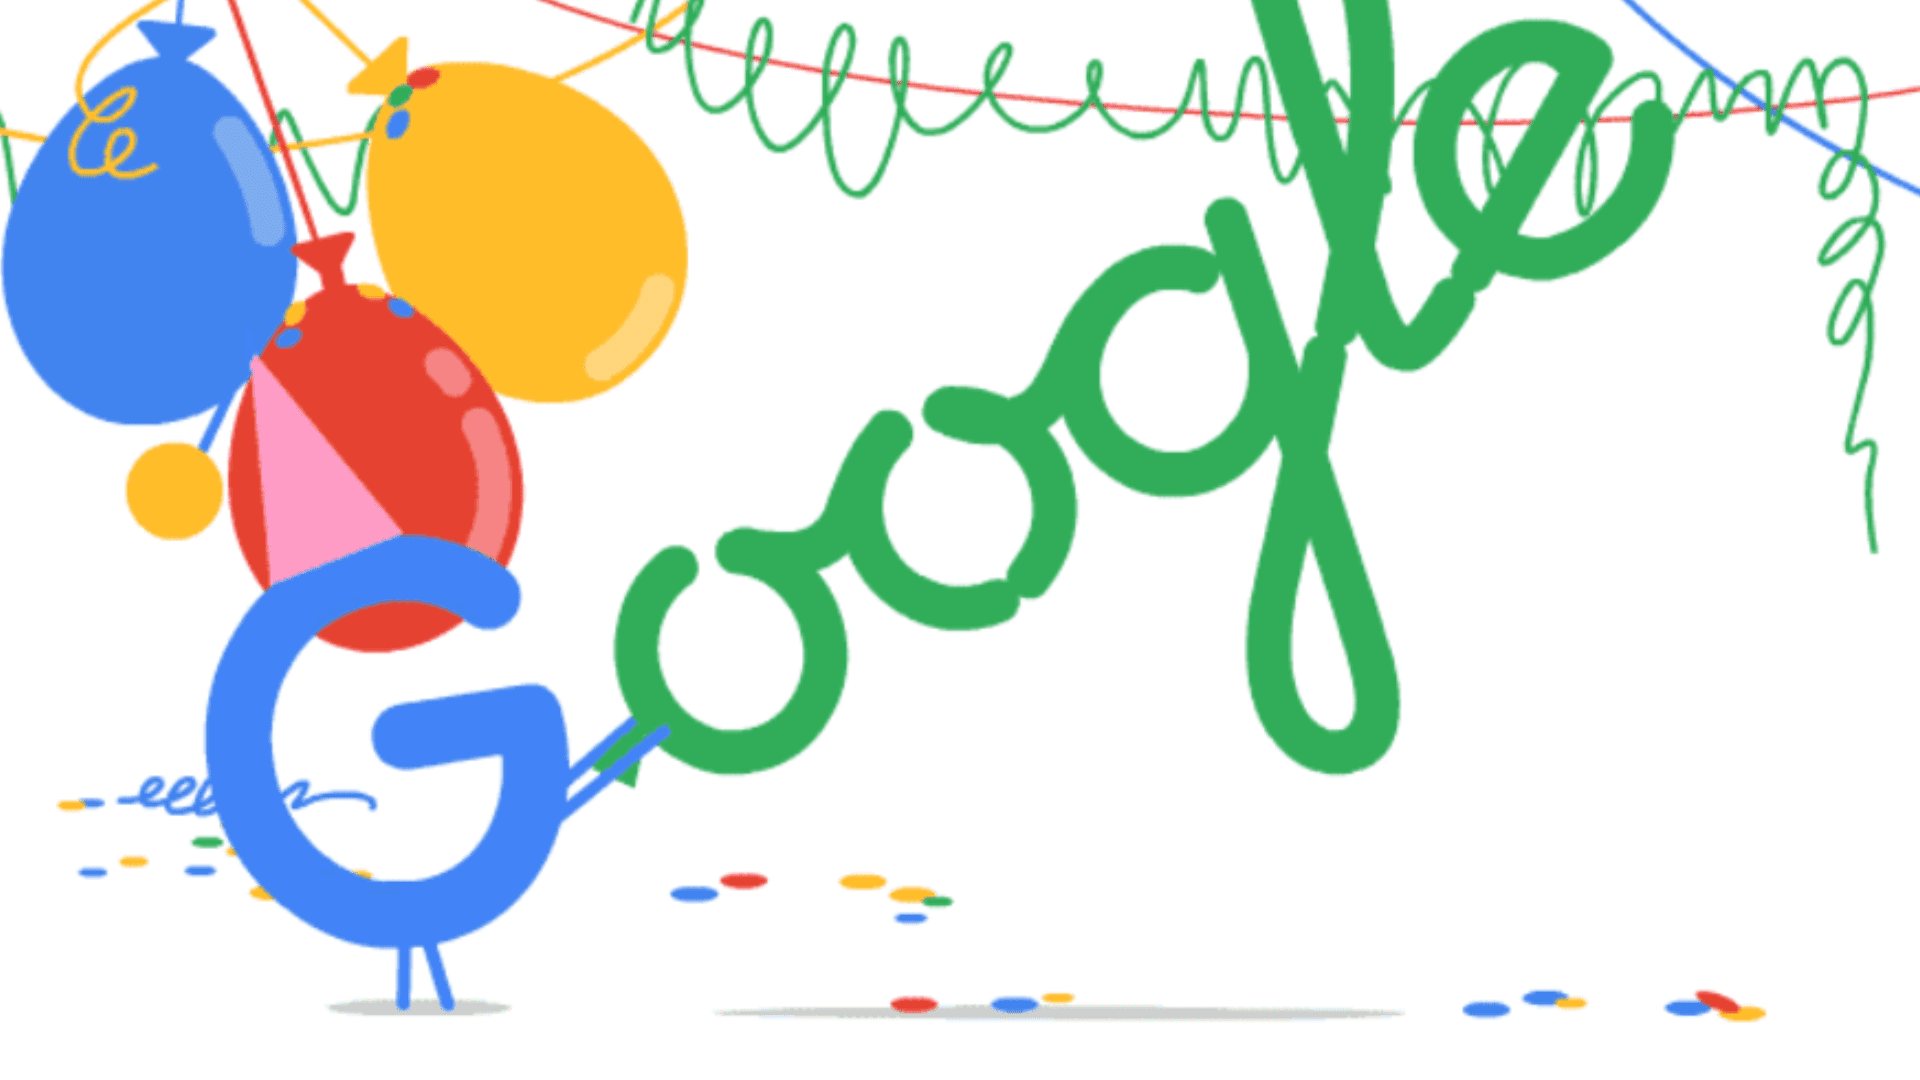 Google-18-birthday.jpg